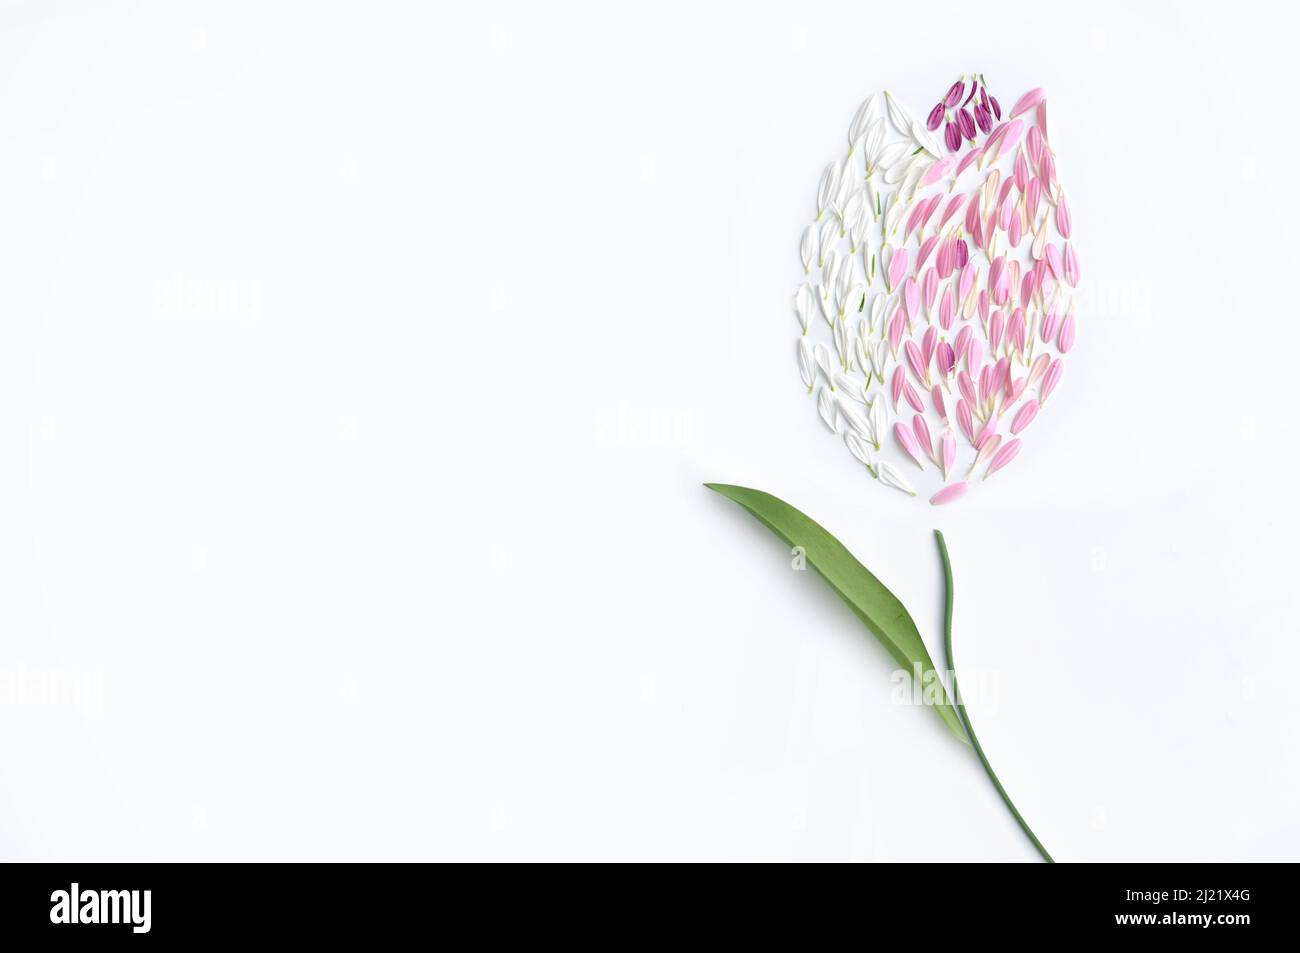 Blanco; rosa; pétalos de flores púrpura en forma de tulipán de primavera Foto de stock